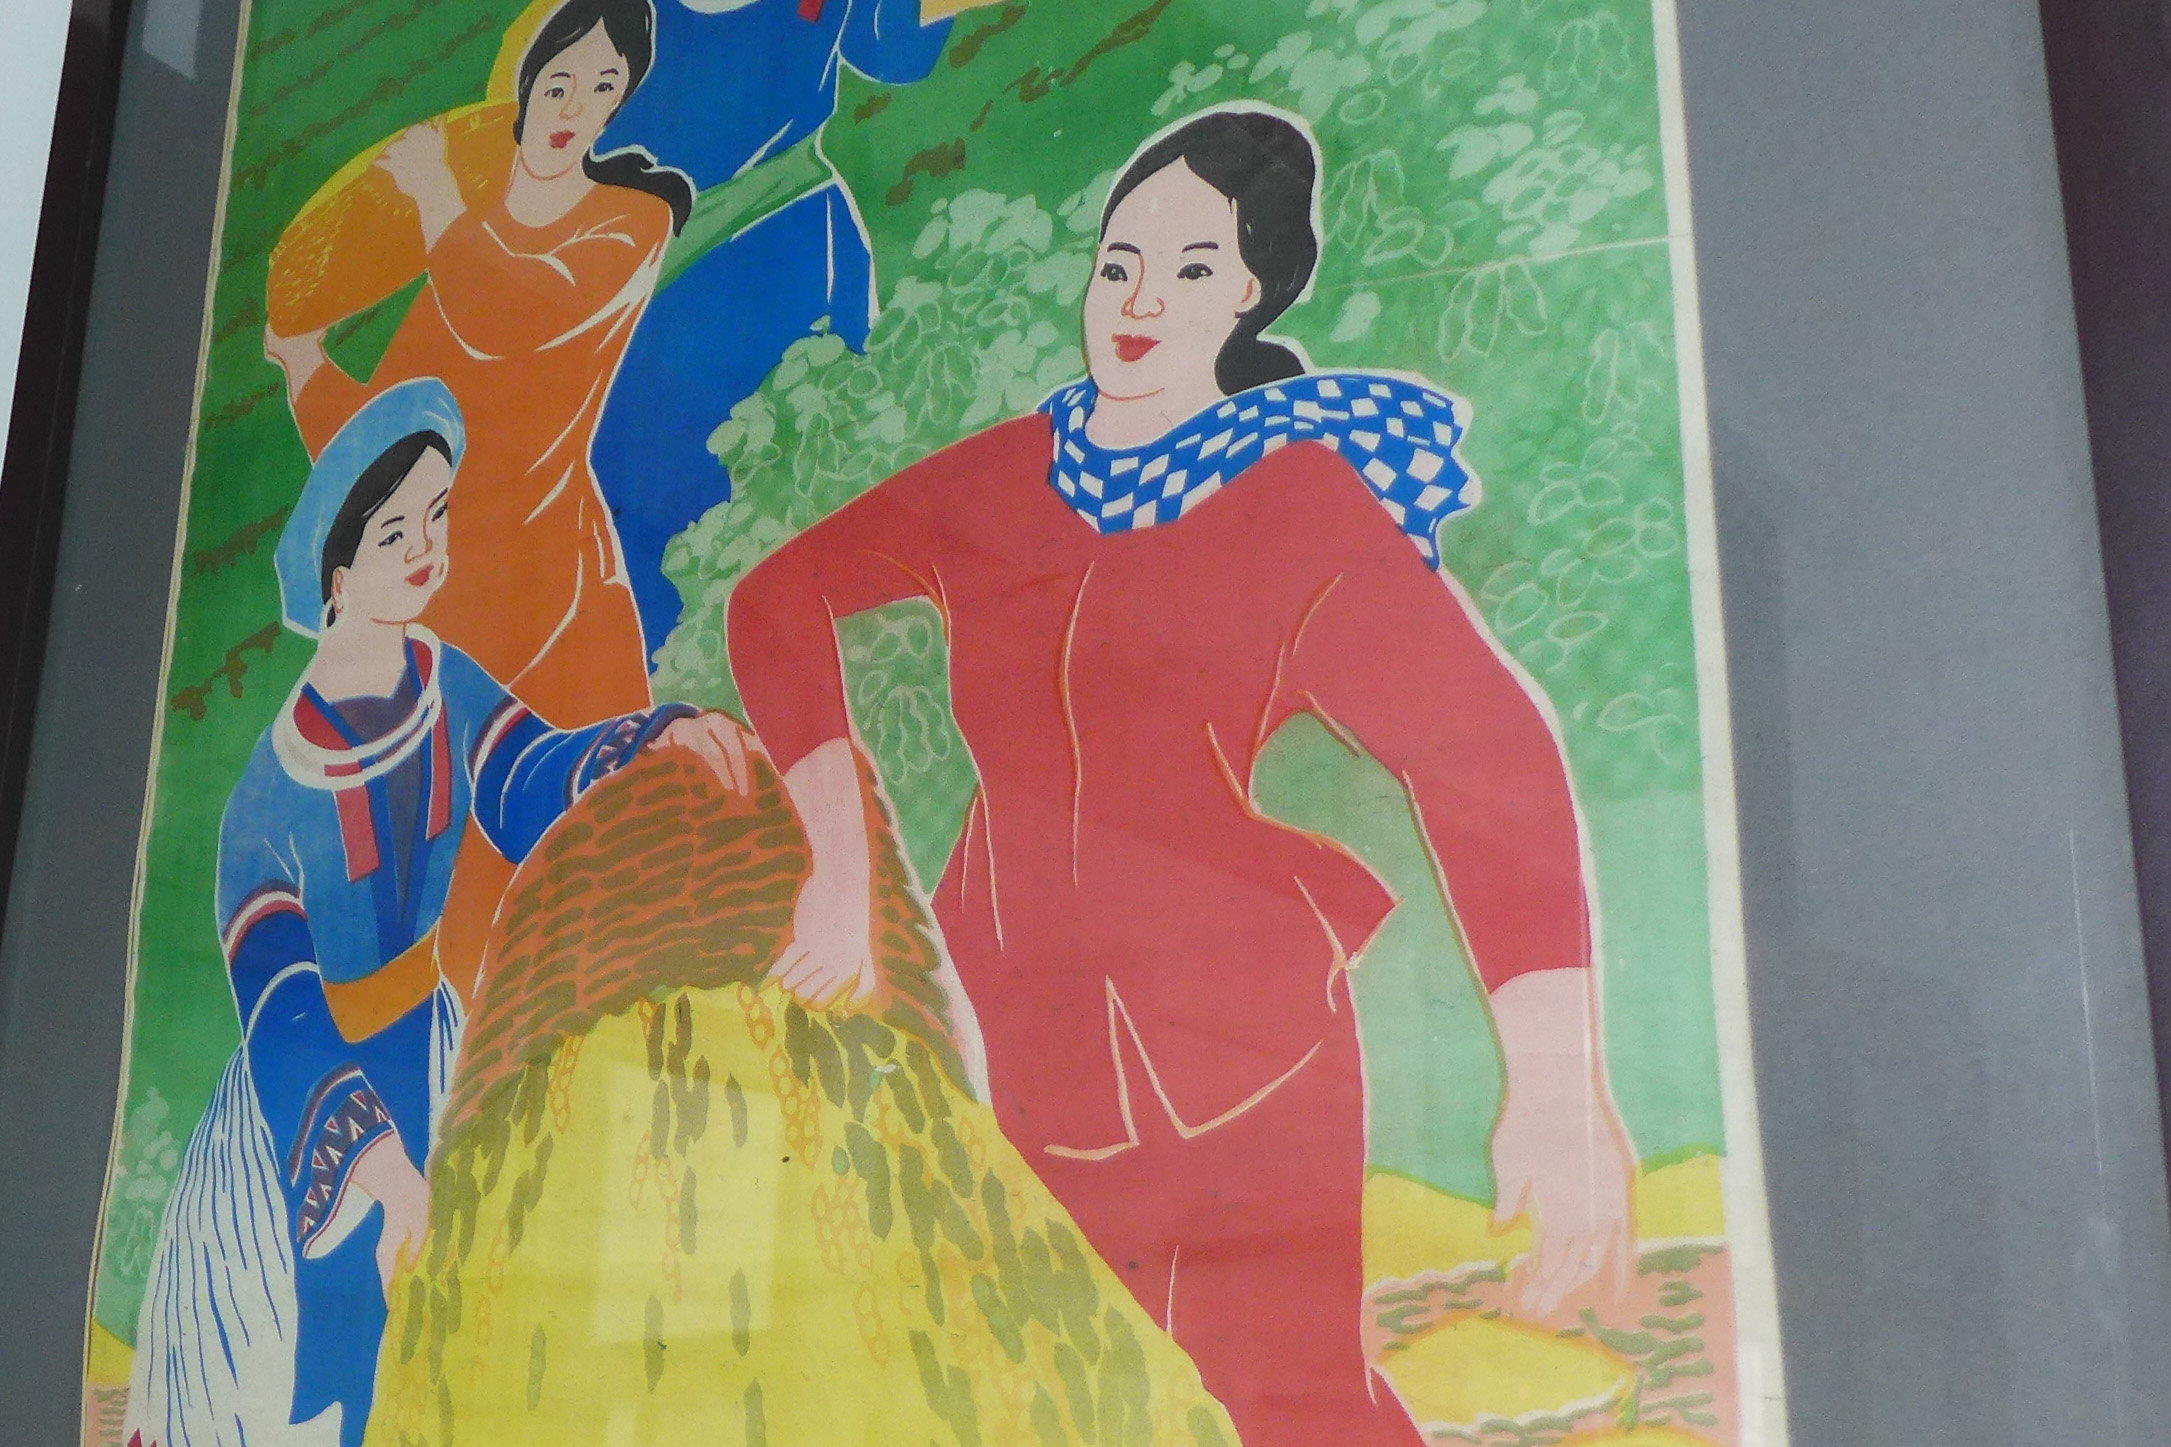 Vous pouvez aussi voir des affiches destinées à valoriser une femme vietnamienne combattante, au foyer, dévouée au travail et à la famille.